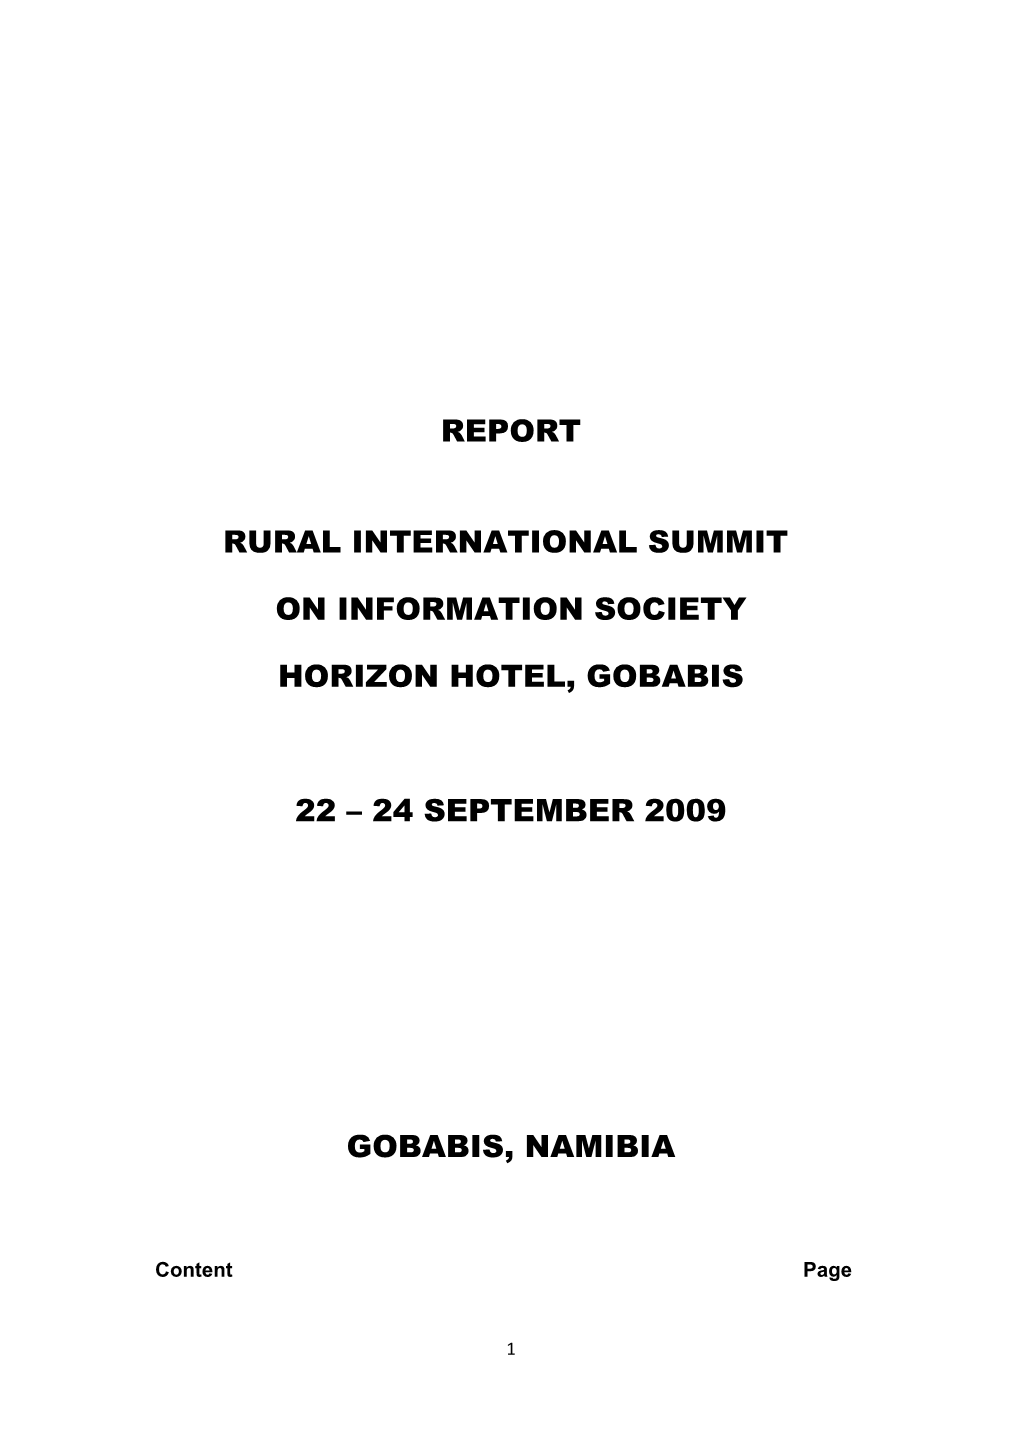 Rural International Summit